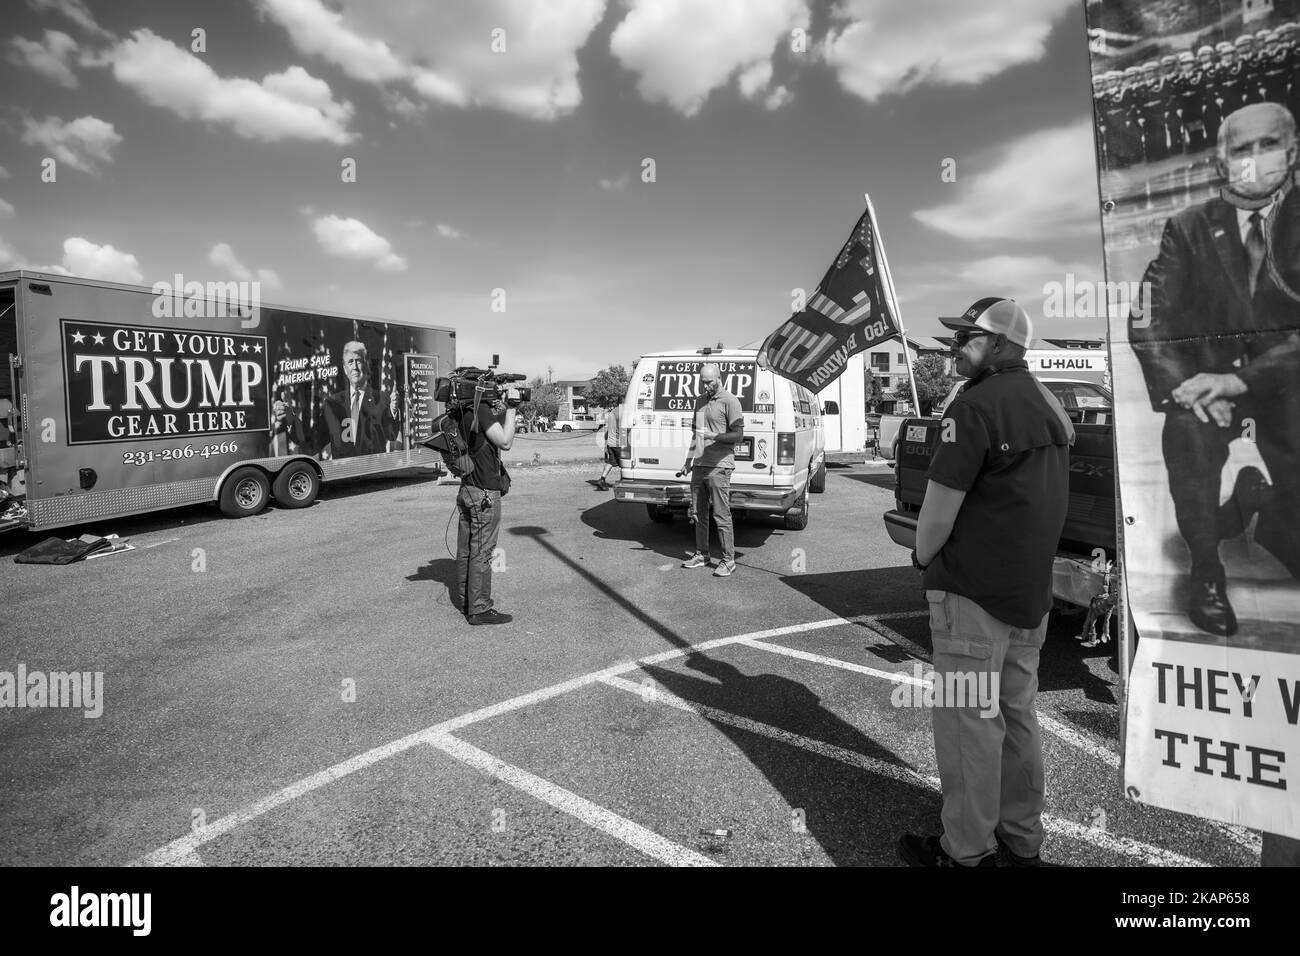 Une photo en échelle de gris de la presse faisant état du rassemblement de Trump à Prescott Valley, en Arizona Banque D'Images